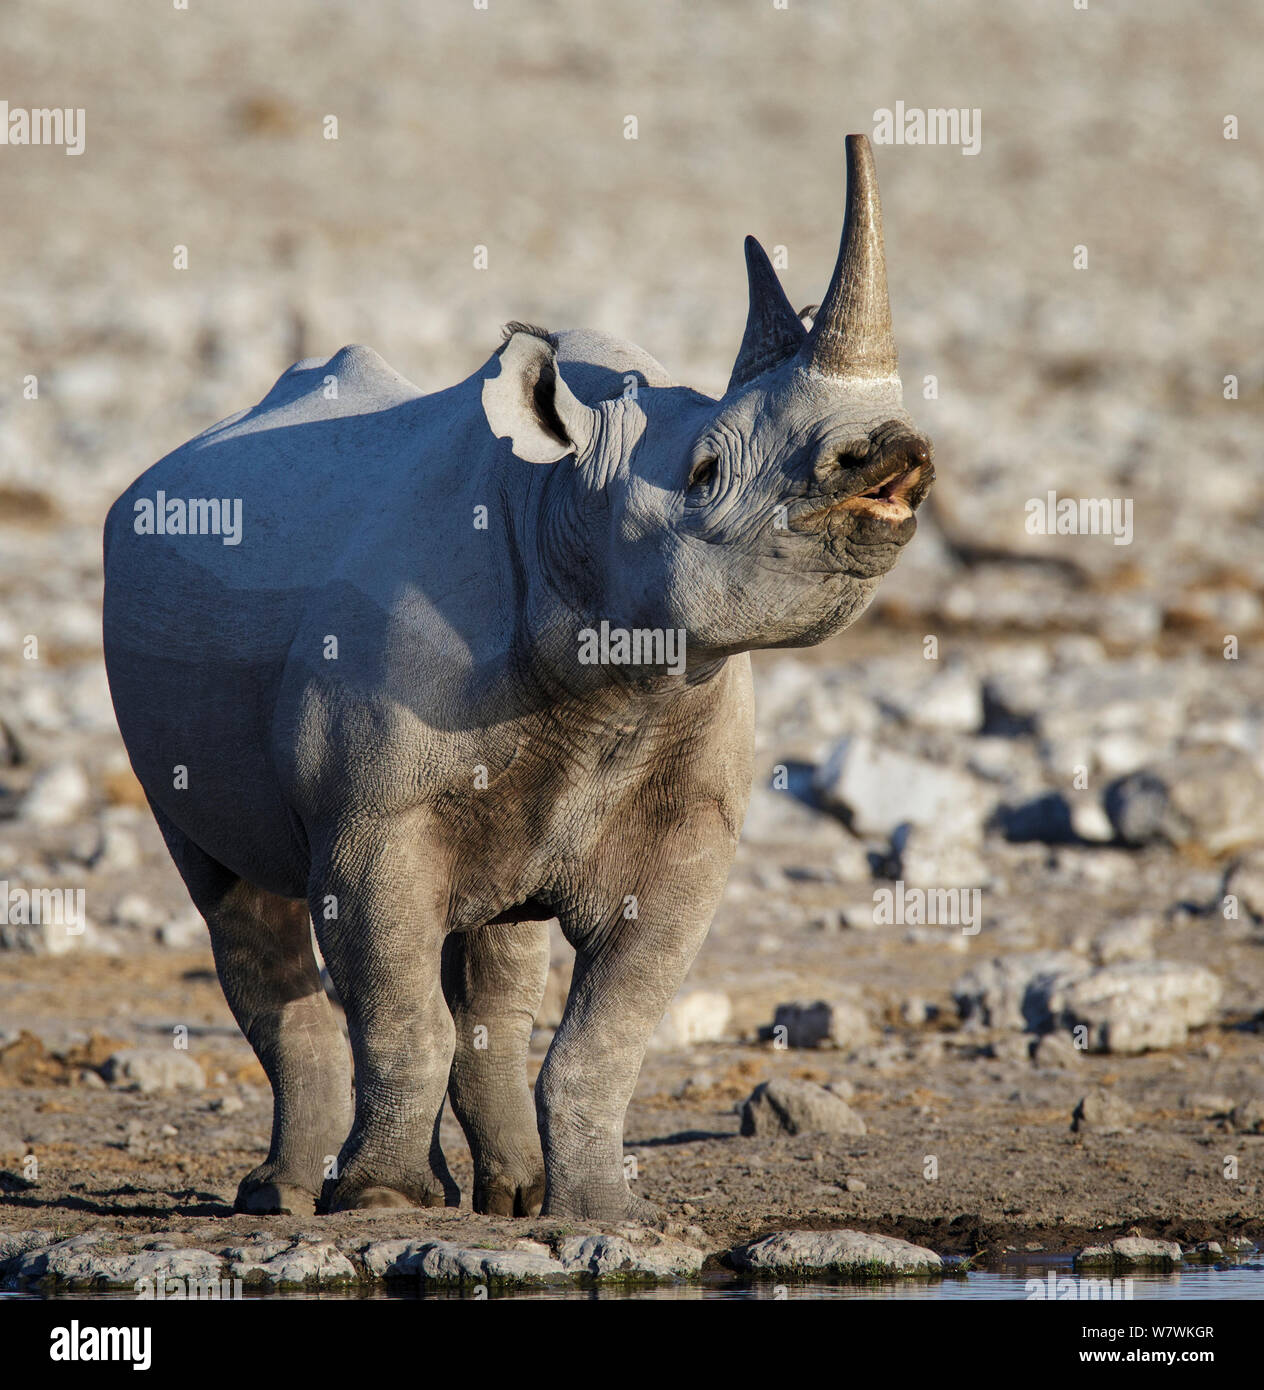 Le rhinocéros noir (Diceros bicornis) montrant flehmen réponse, Etosha National Park, Namibie. Banque D'Images